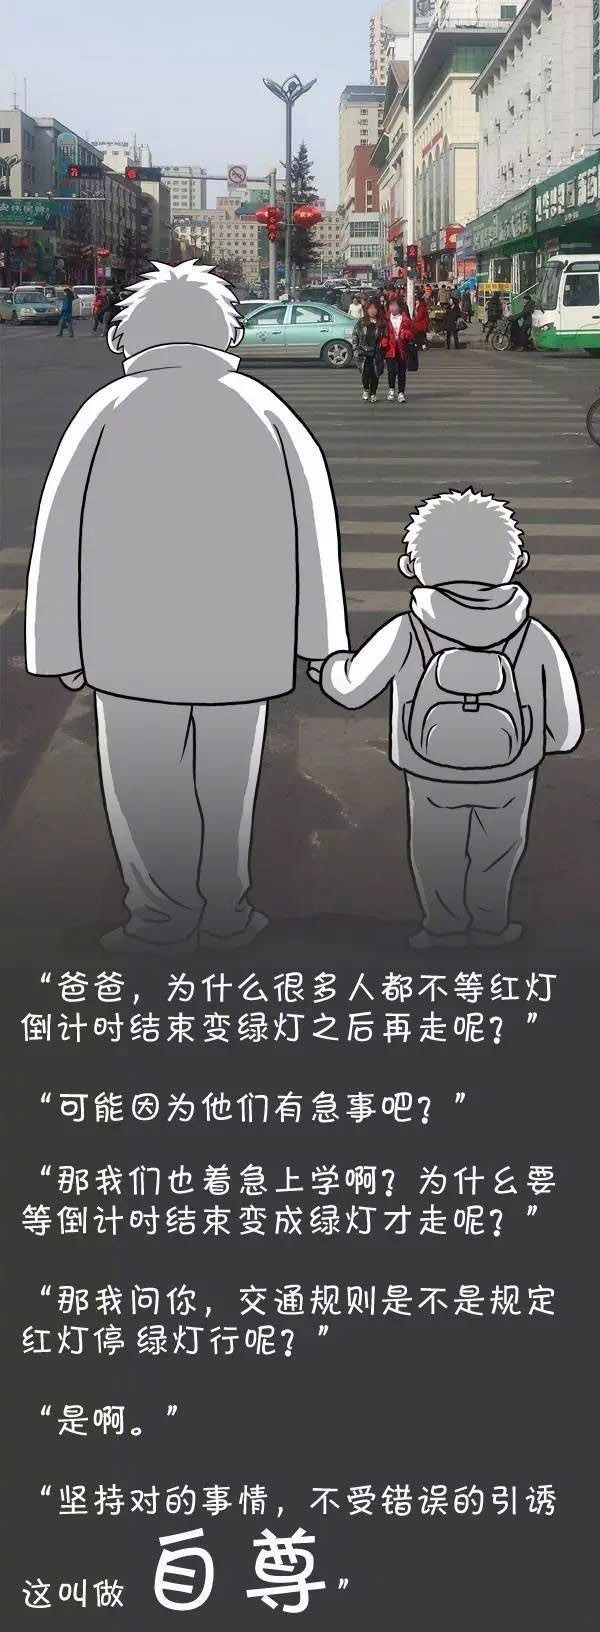 【漫画】关于问题 爸爸是这样给儿子解释的